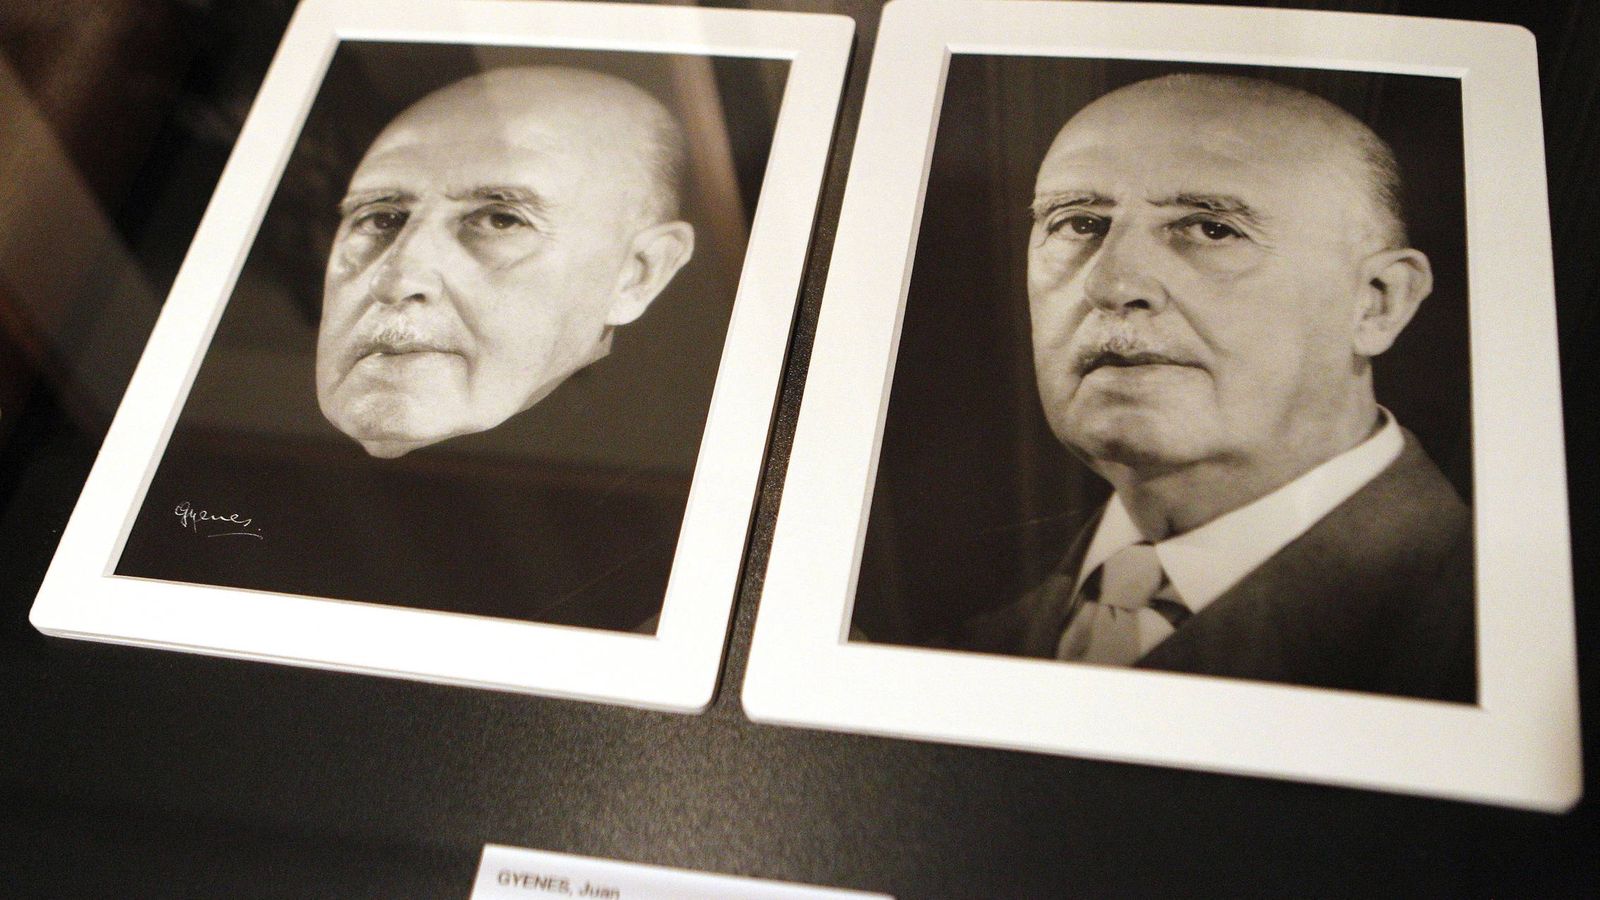 Foto: Instantáneas de Francisco Franco tomadas en el Palacio del Pardo en 1966 que forman parte de la exposición 'Gyenes. Maestro fotógrafo'. (EFE)